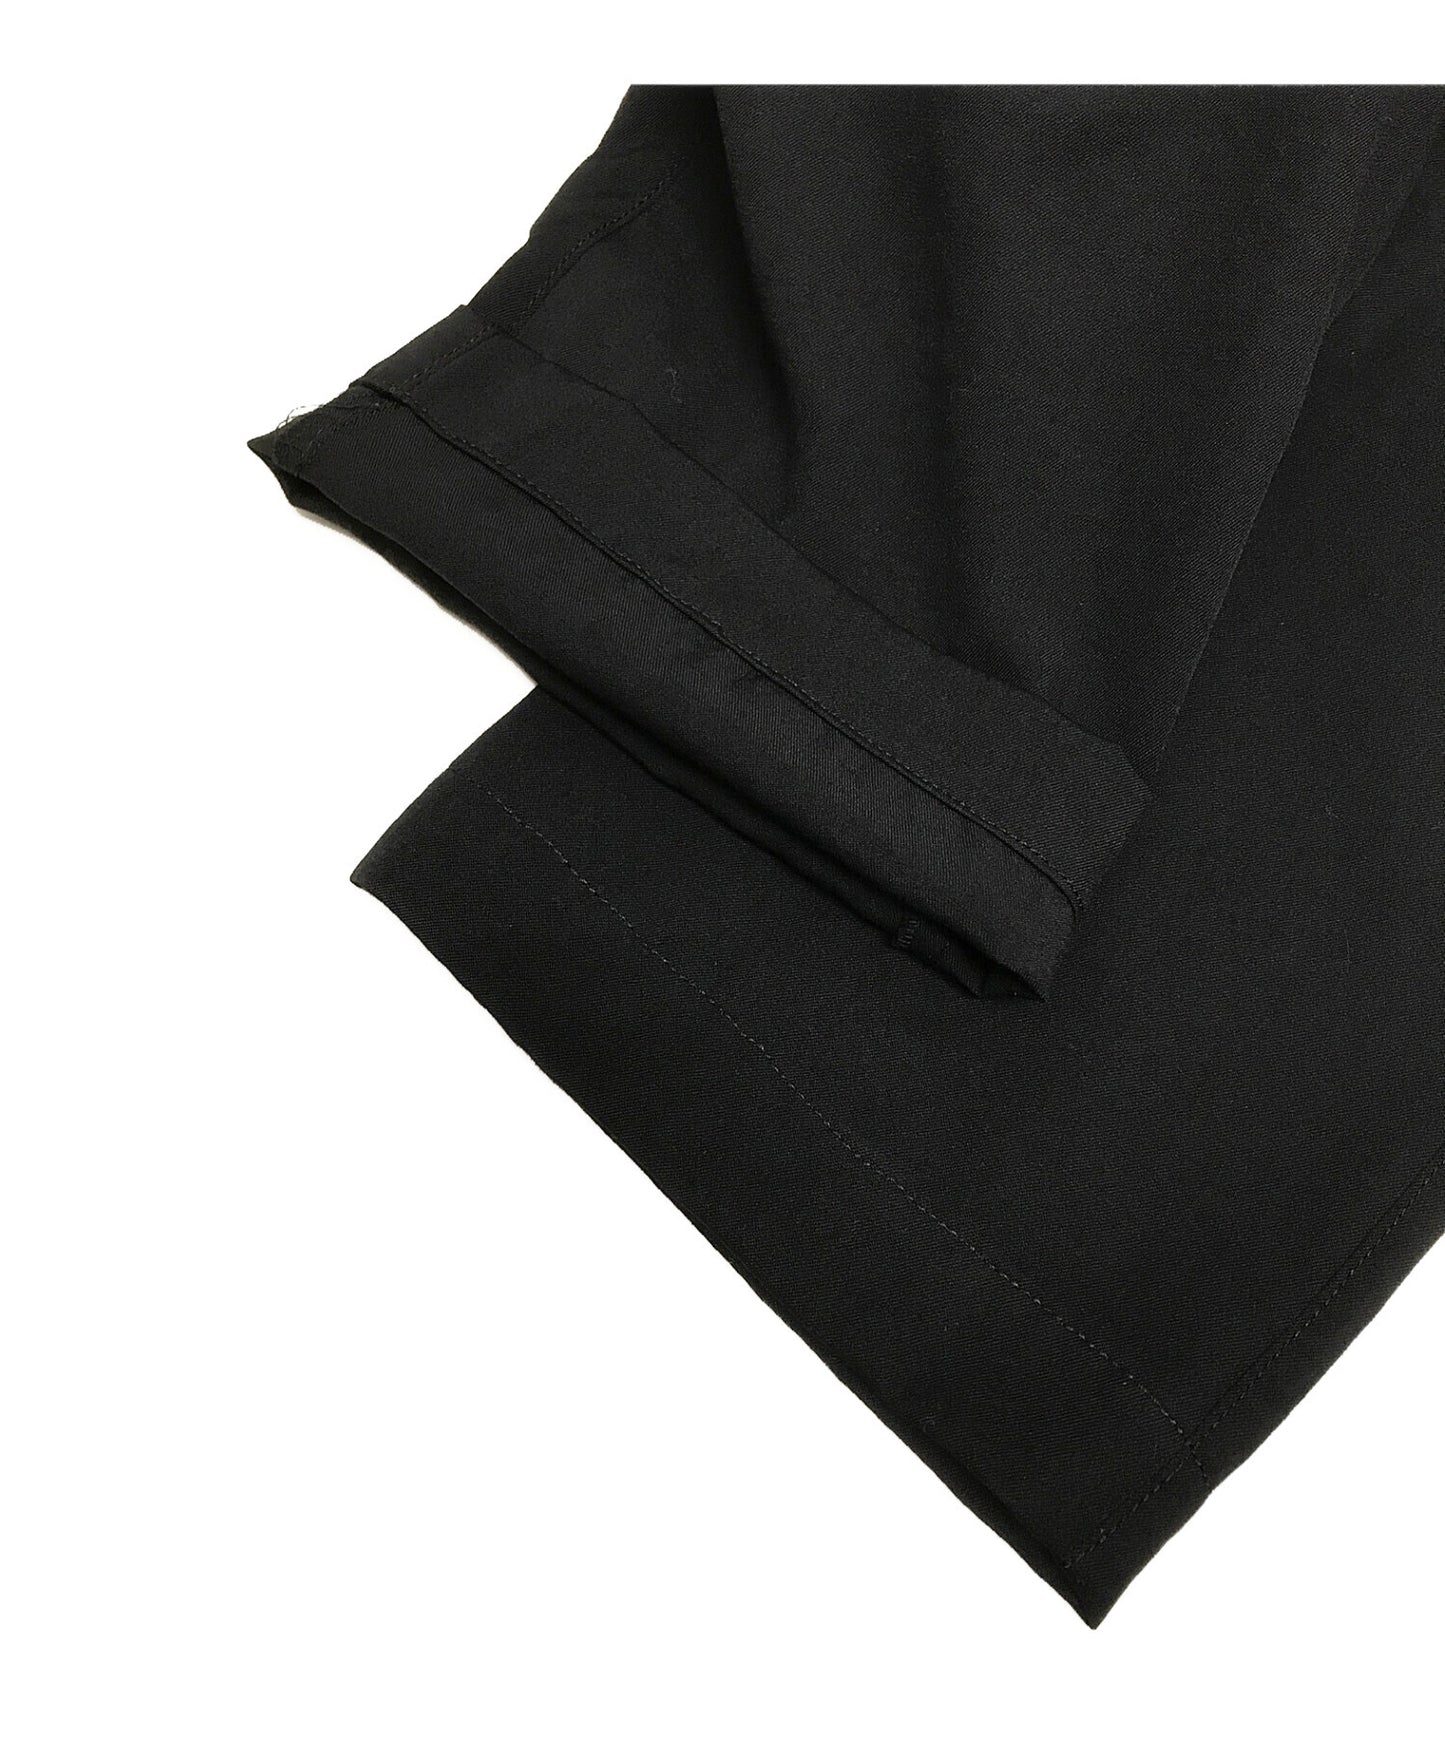 กางเกง Jodhpurs ที่ดัดแปลงของ Y การออกแบบปุ่มกว้างการออกแบบ unisex MX-P17-100